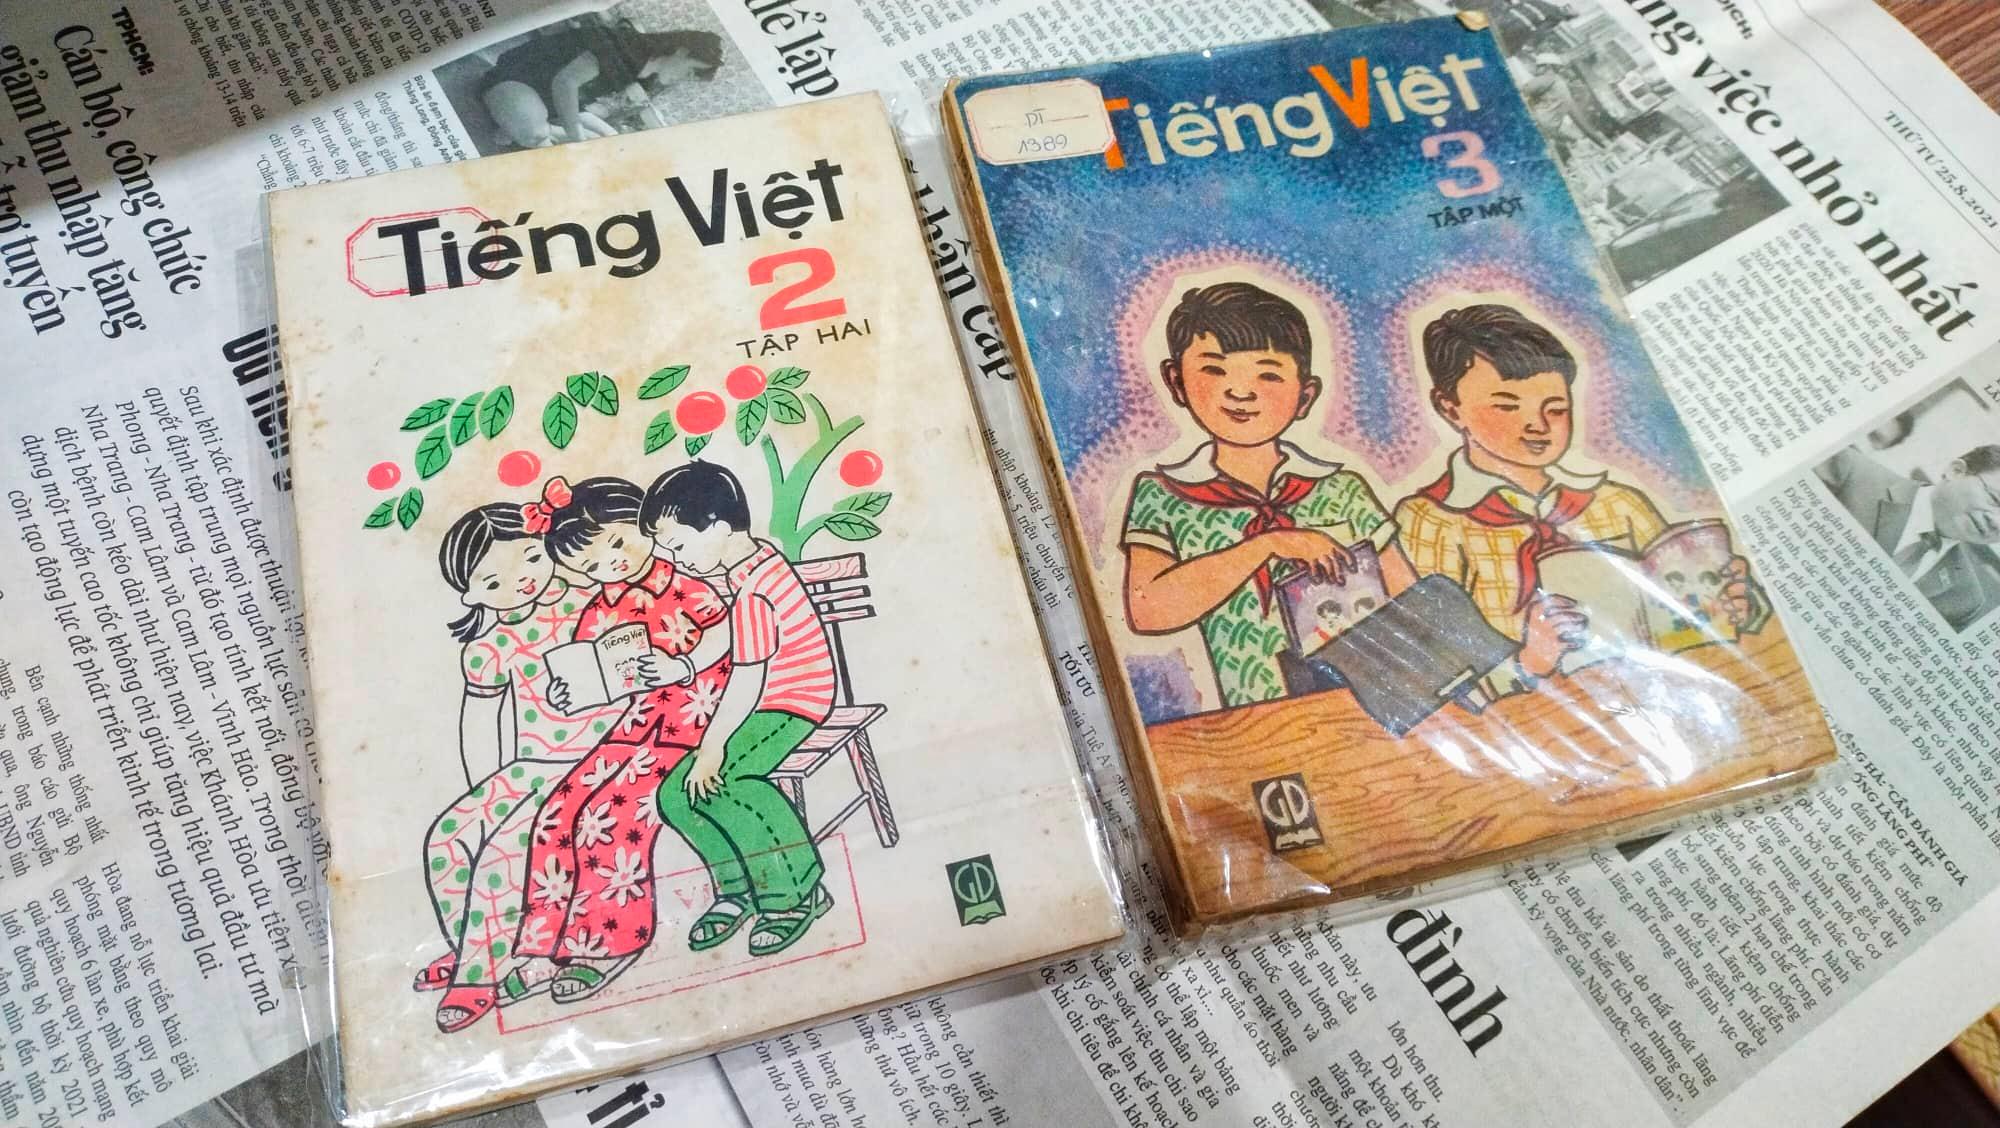 Sách giáo khoa cũ: Sách giáo khoa cũ là những kí ức của học trò trong quá trình học tập. Hãy cùng xem lại những hình ảnh của những cuốn sách giáo khoa cũ để đọng lại những kí ức đẹp và tìm hiểu thêm về giáo dục Việt Nam.